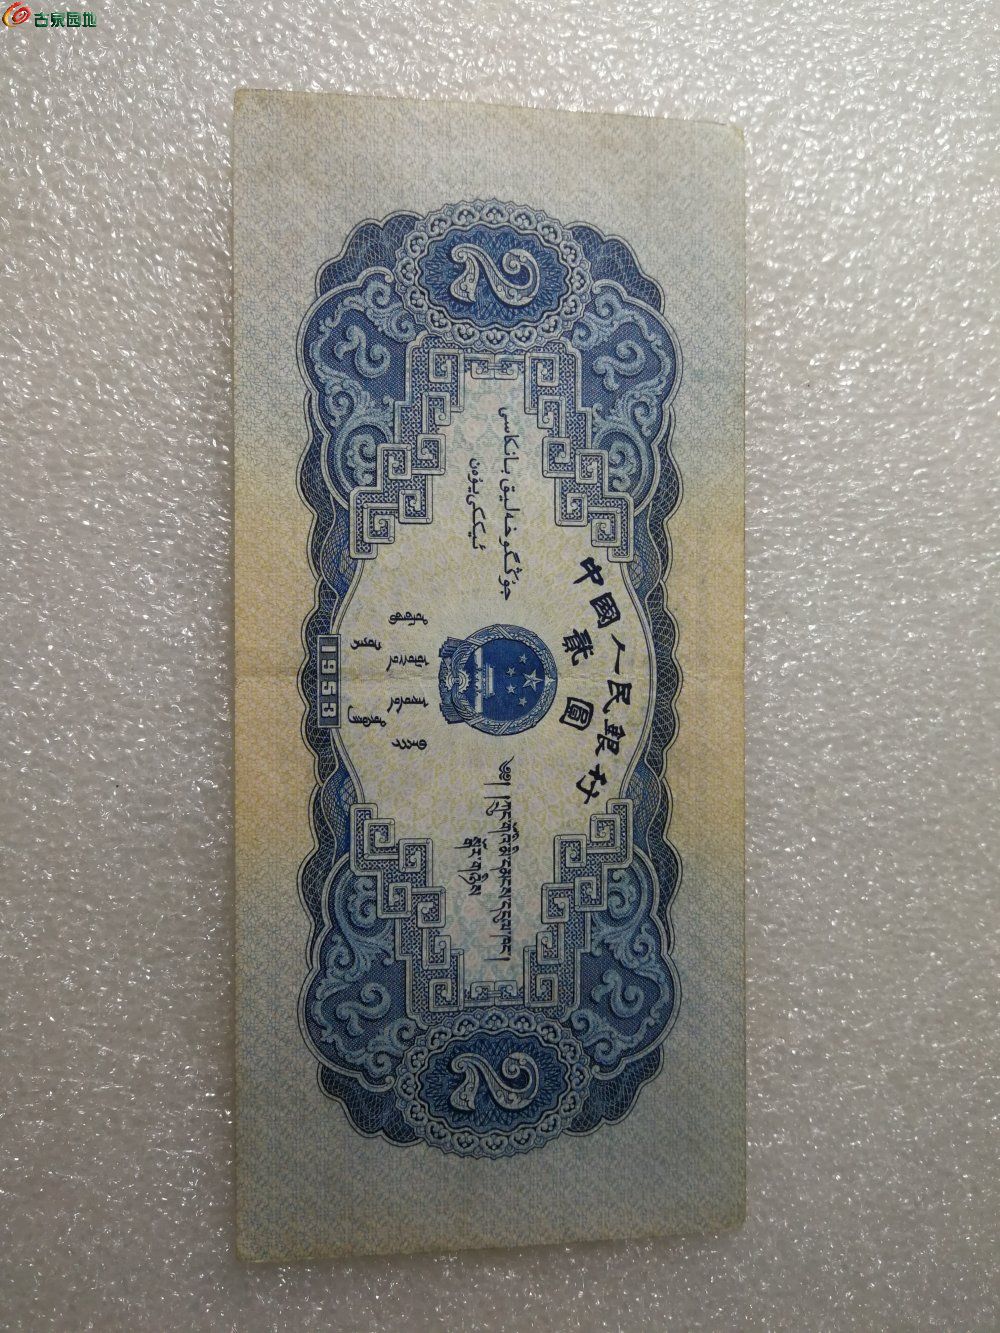 老版2元人民币图案图片